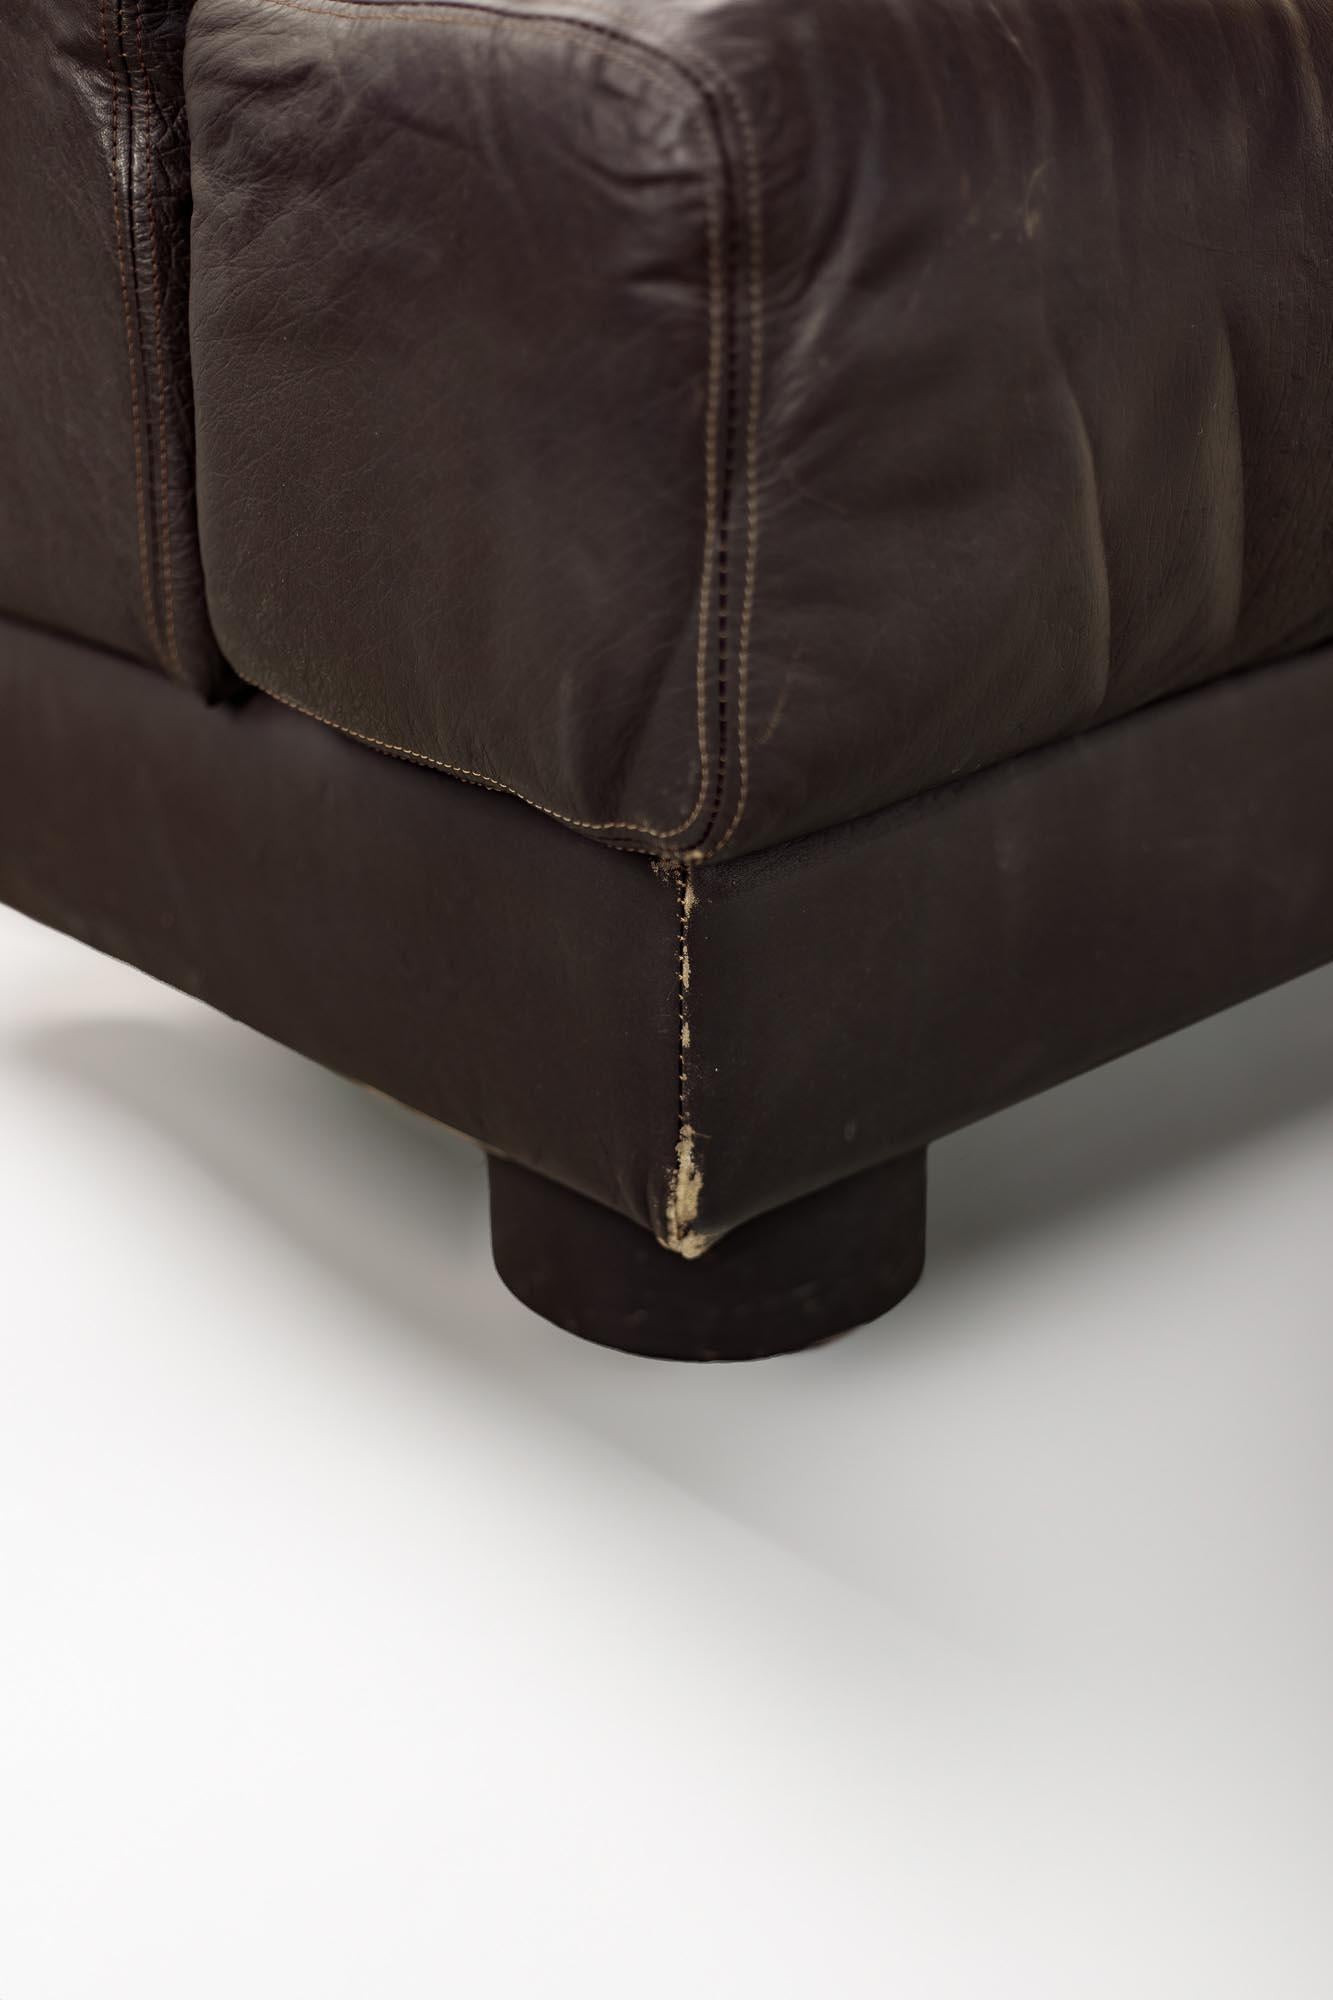 Rare Percival Lafer Sofa in Dark Brown Leather For Sale 3